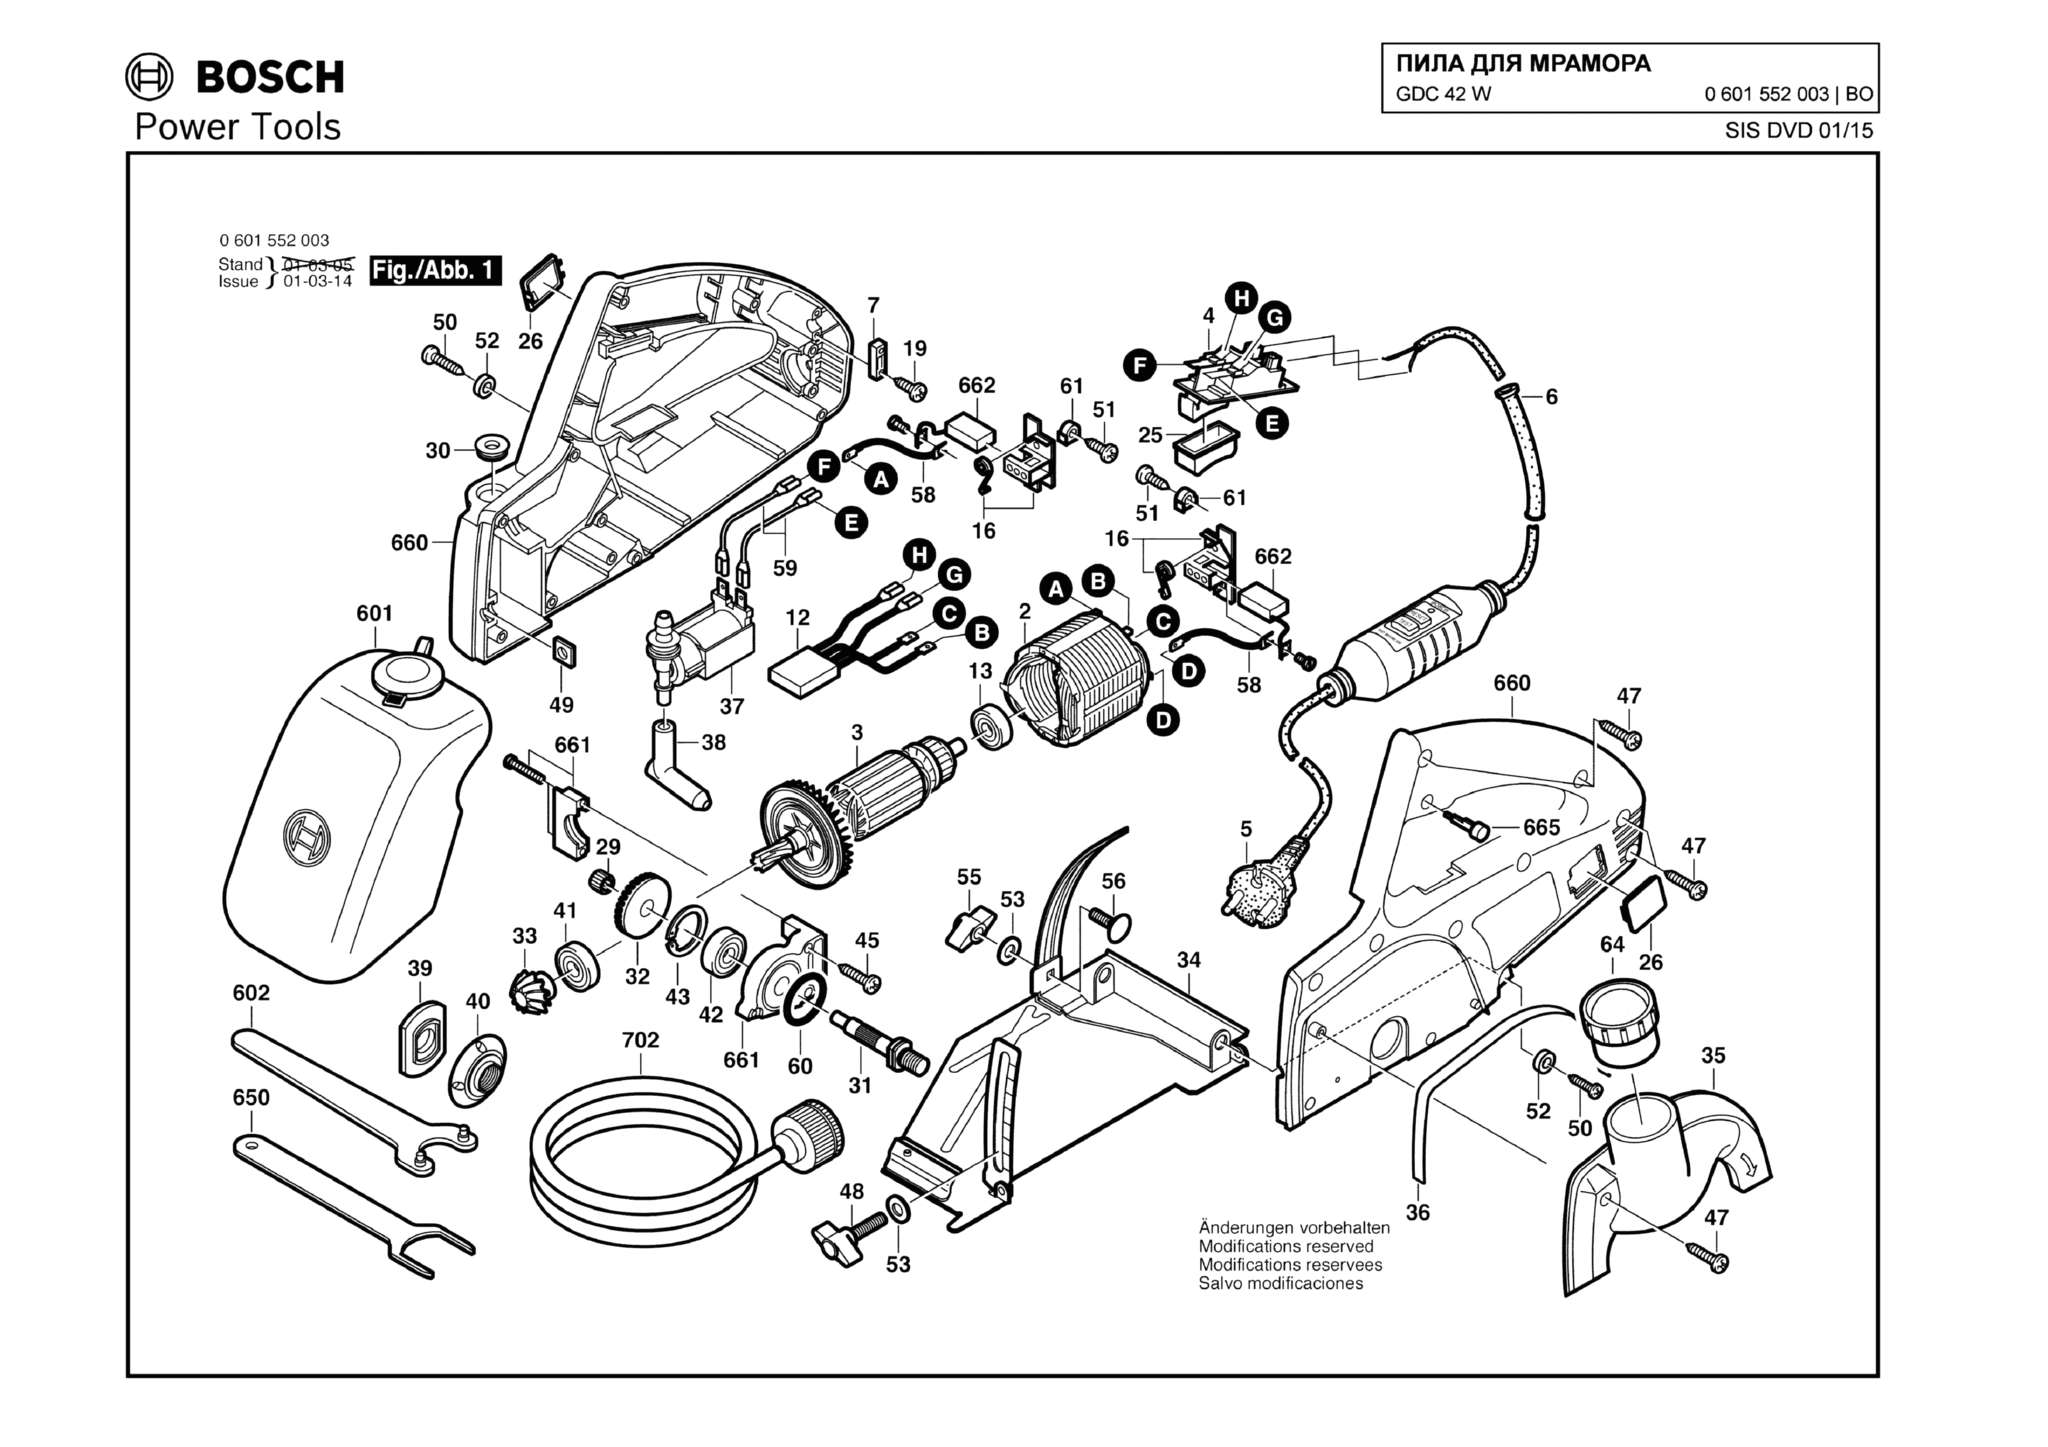 Запчасти, схема и деталировка Bosch GDC 42 W (ТИП 0601552003)